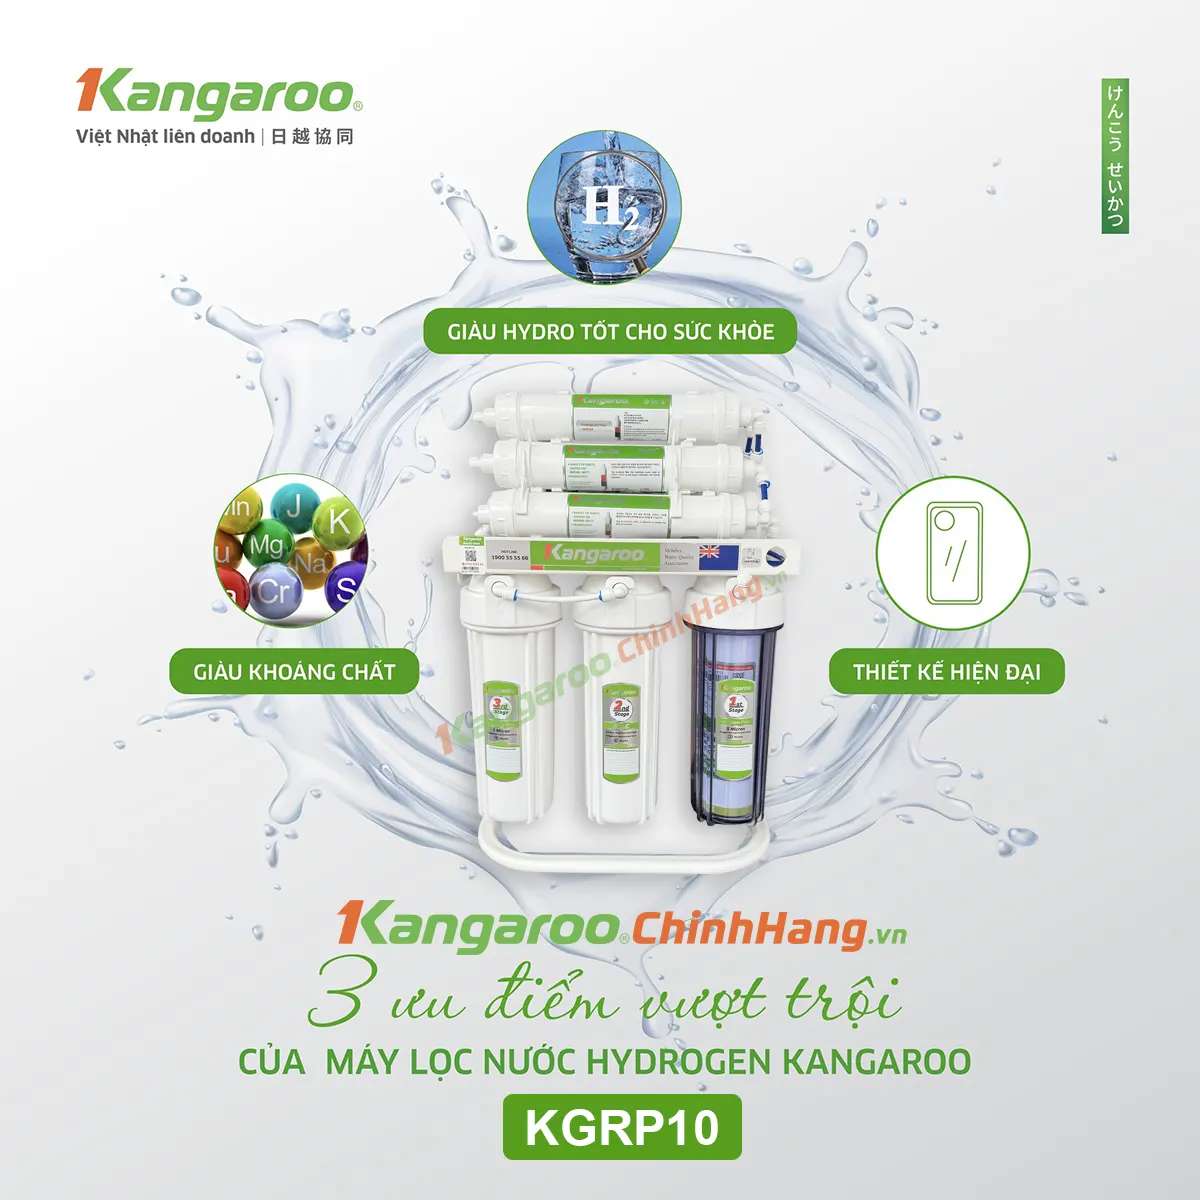 3 ưu điểm vượt trội của máy lọc nước Kangaroo Hydrogen KGRP10